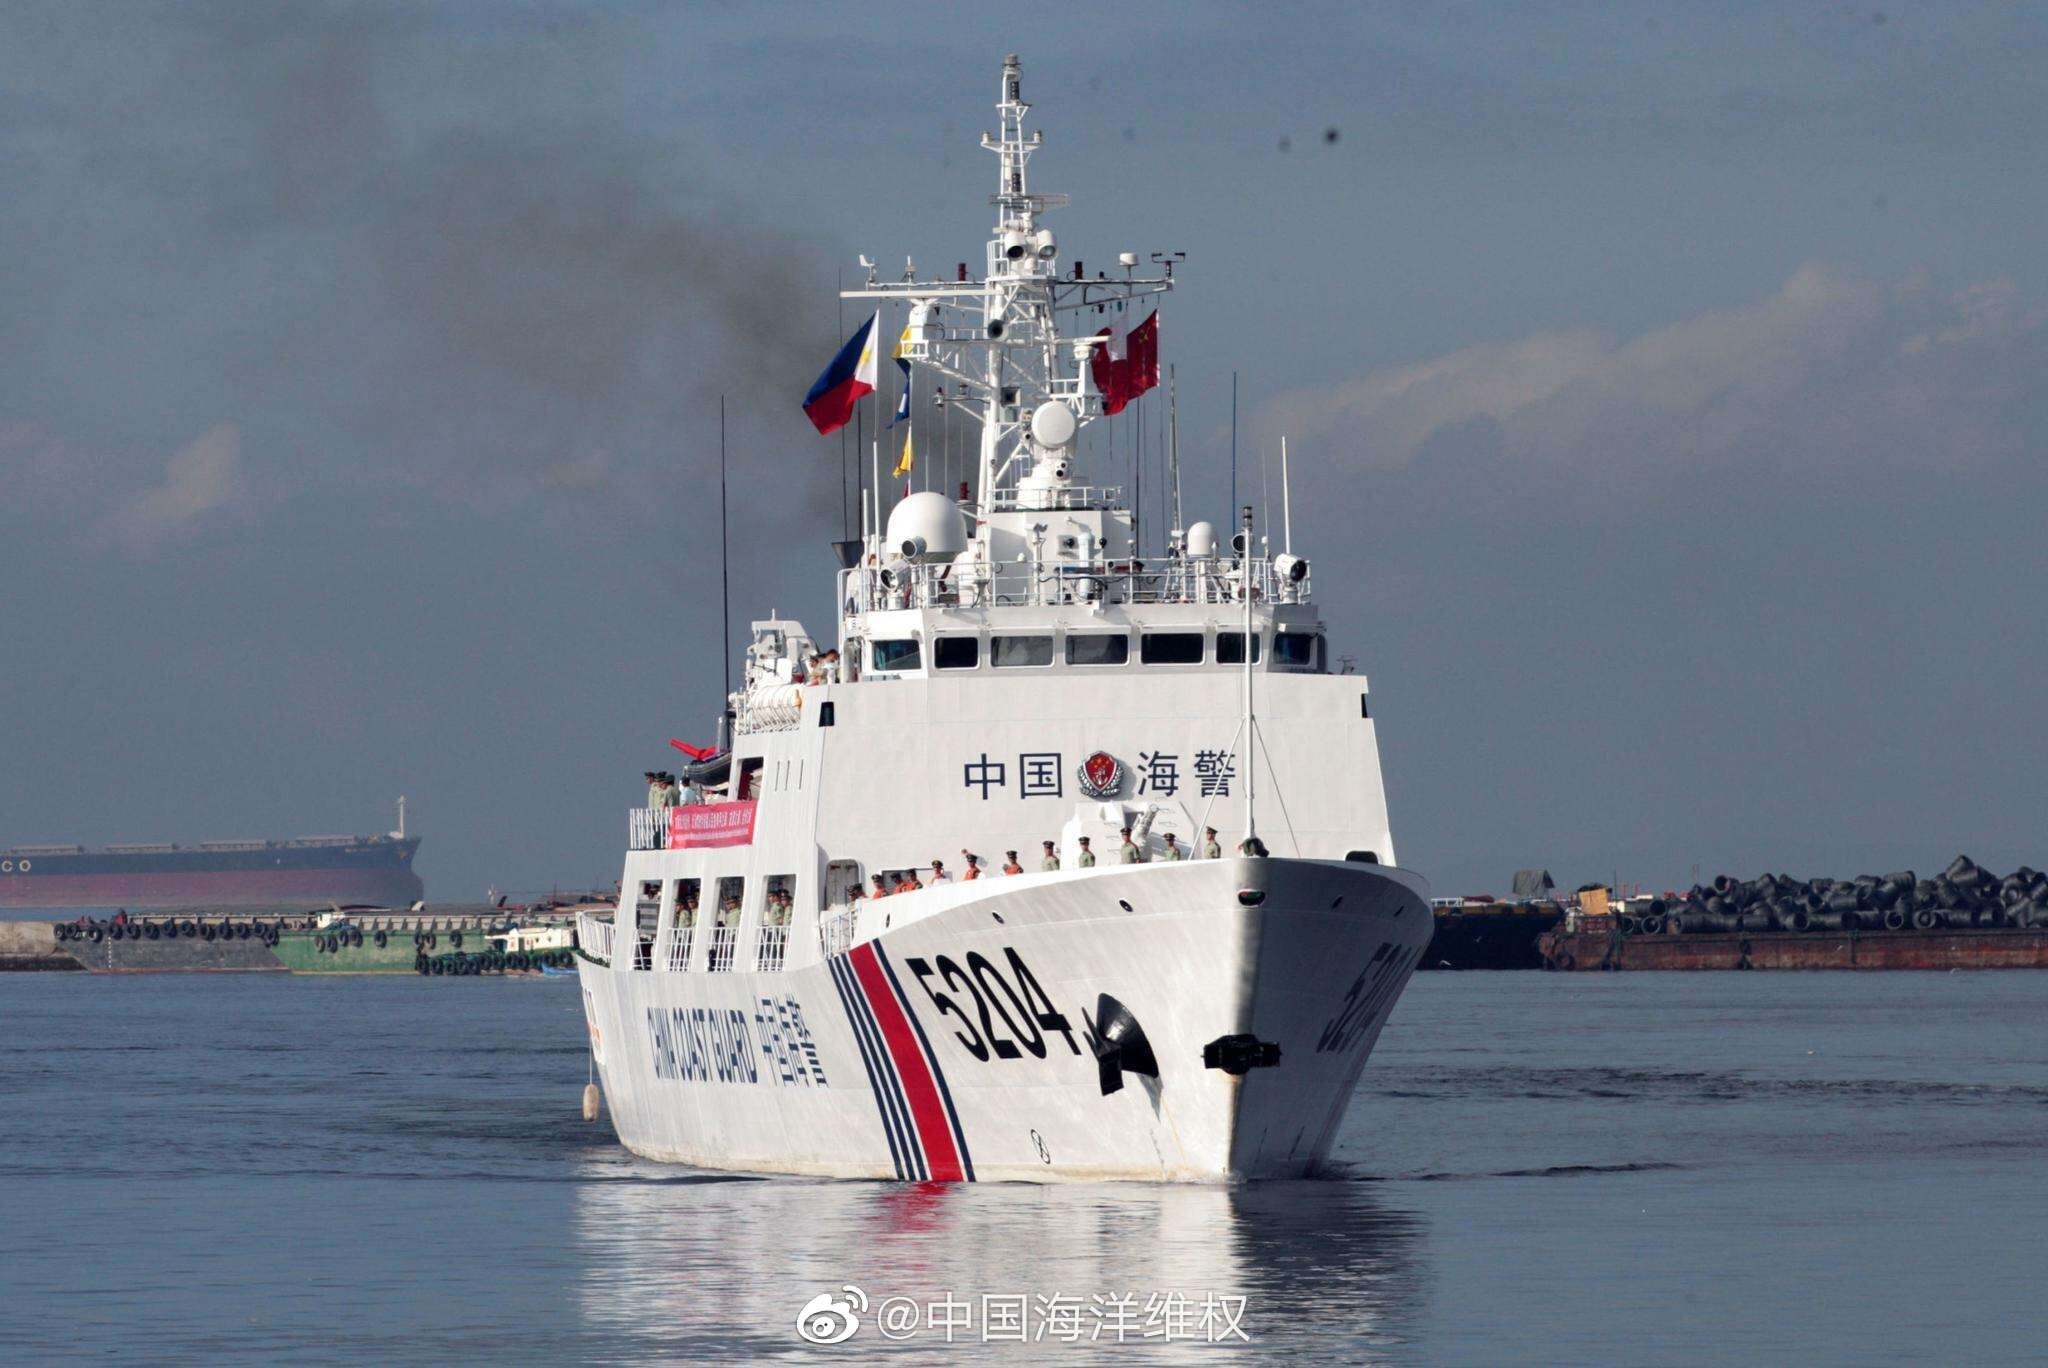 The China Coast Guard intercepted the boat on Sunday morning. Photo: Weibo